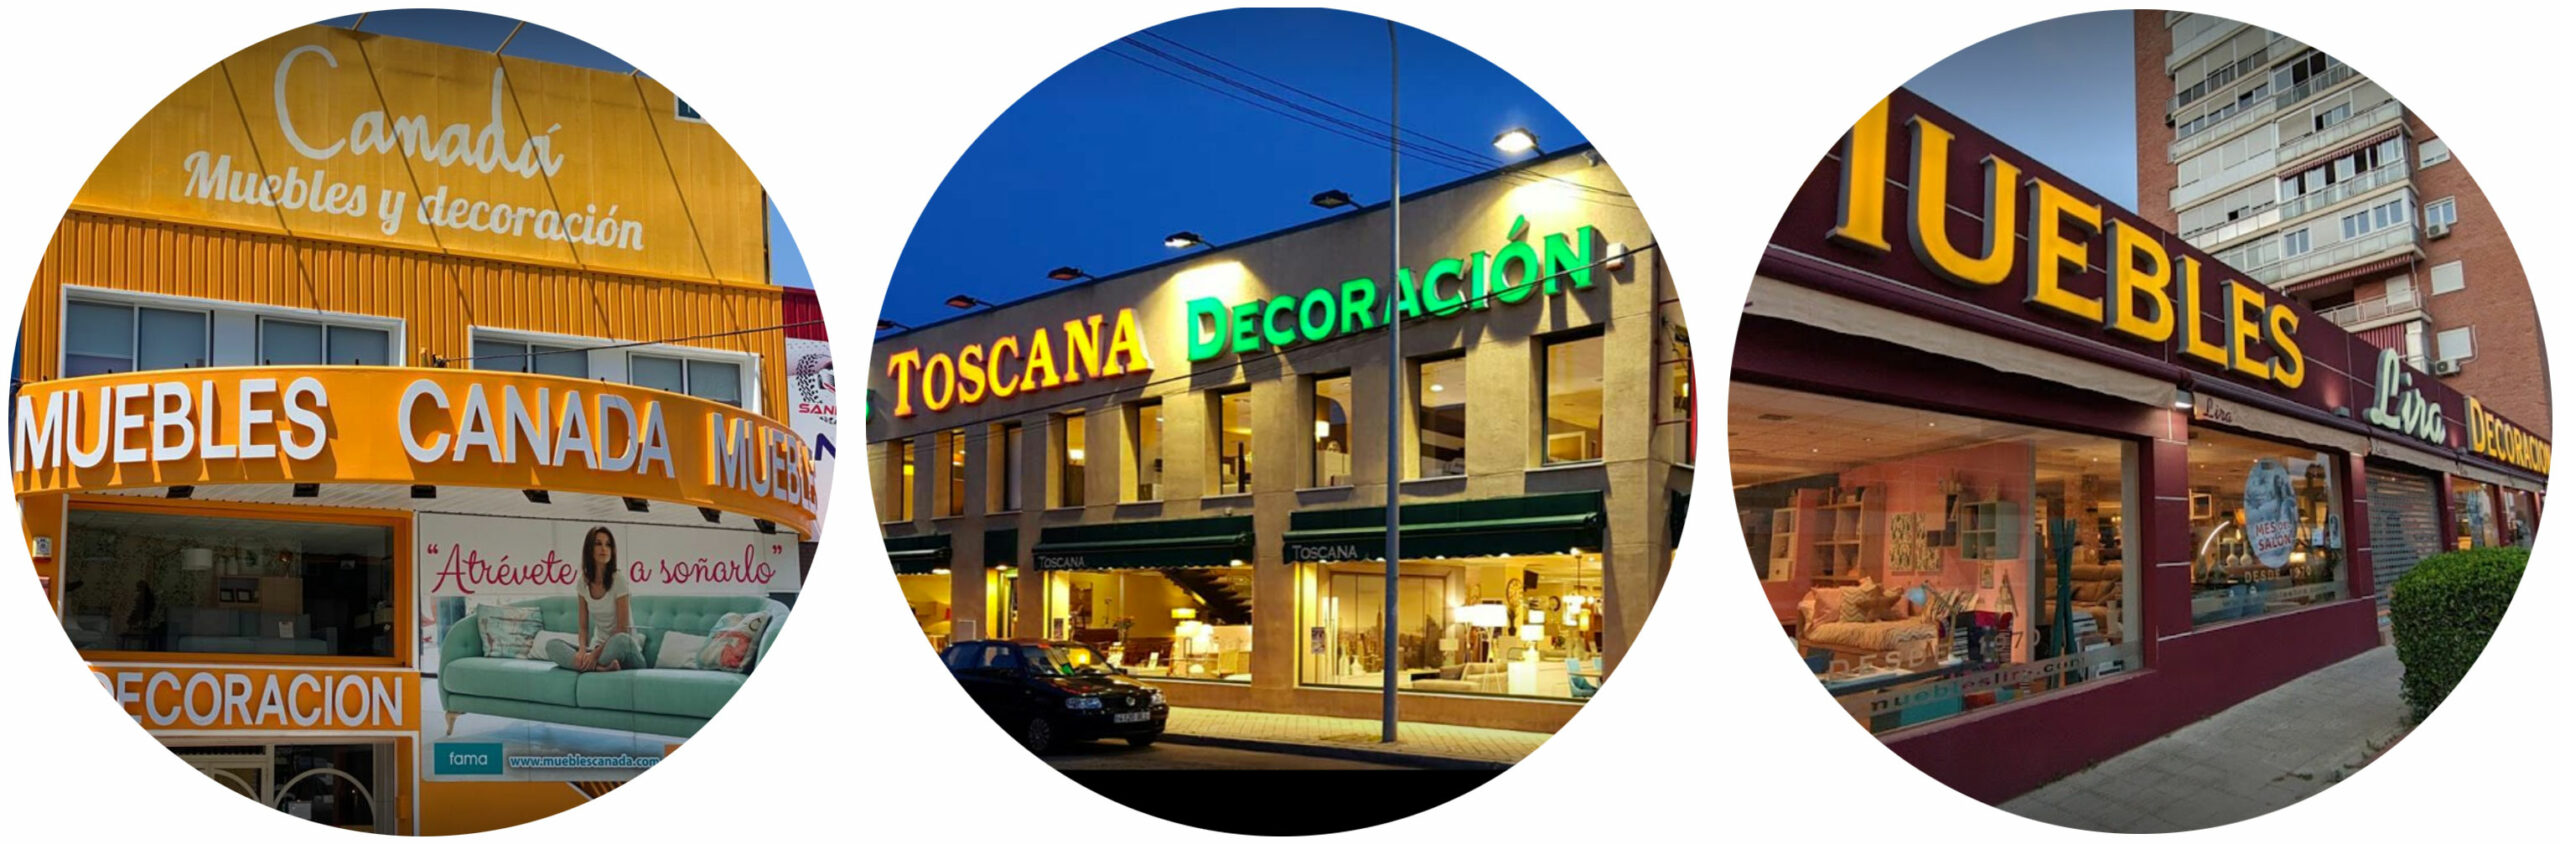 3-tiendas Muebles Toscana